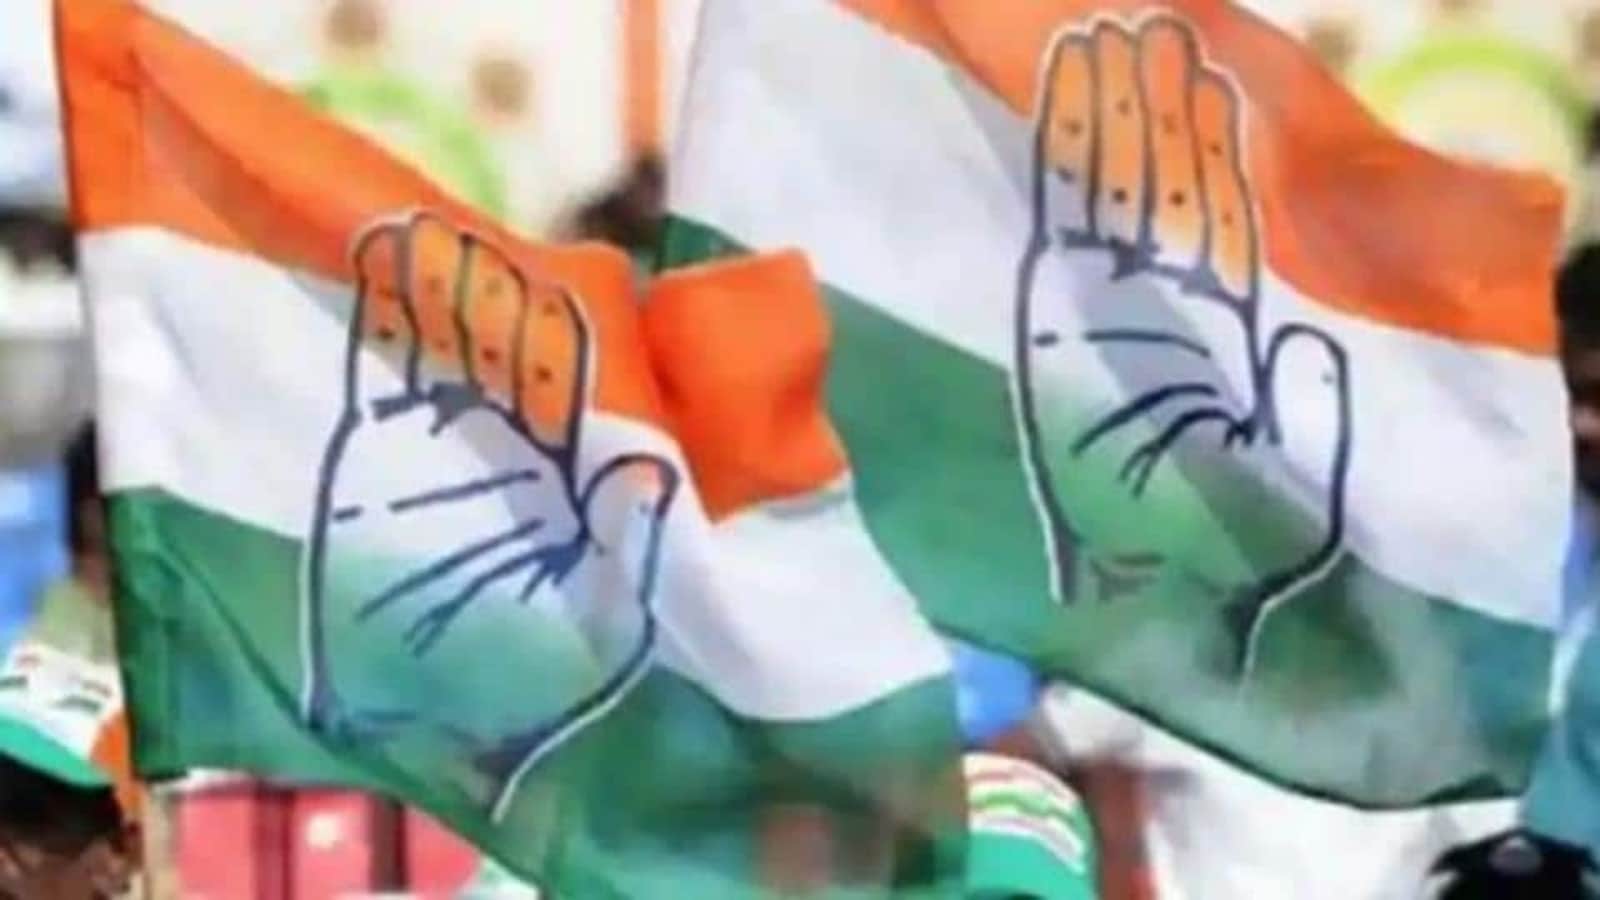 Ranný prehľad: Kongres v Rádžastháne má obavy z prieskumov verejnej mienky Rajya Sabha |  Najnovšie správy z Indie